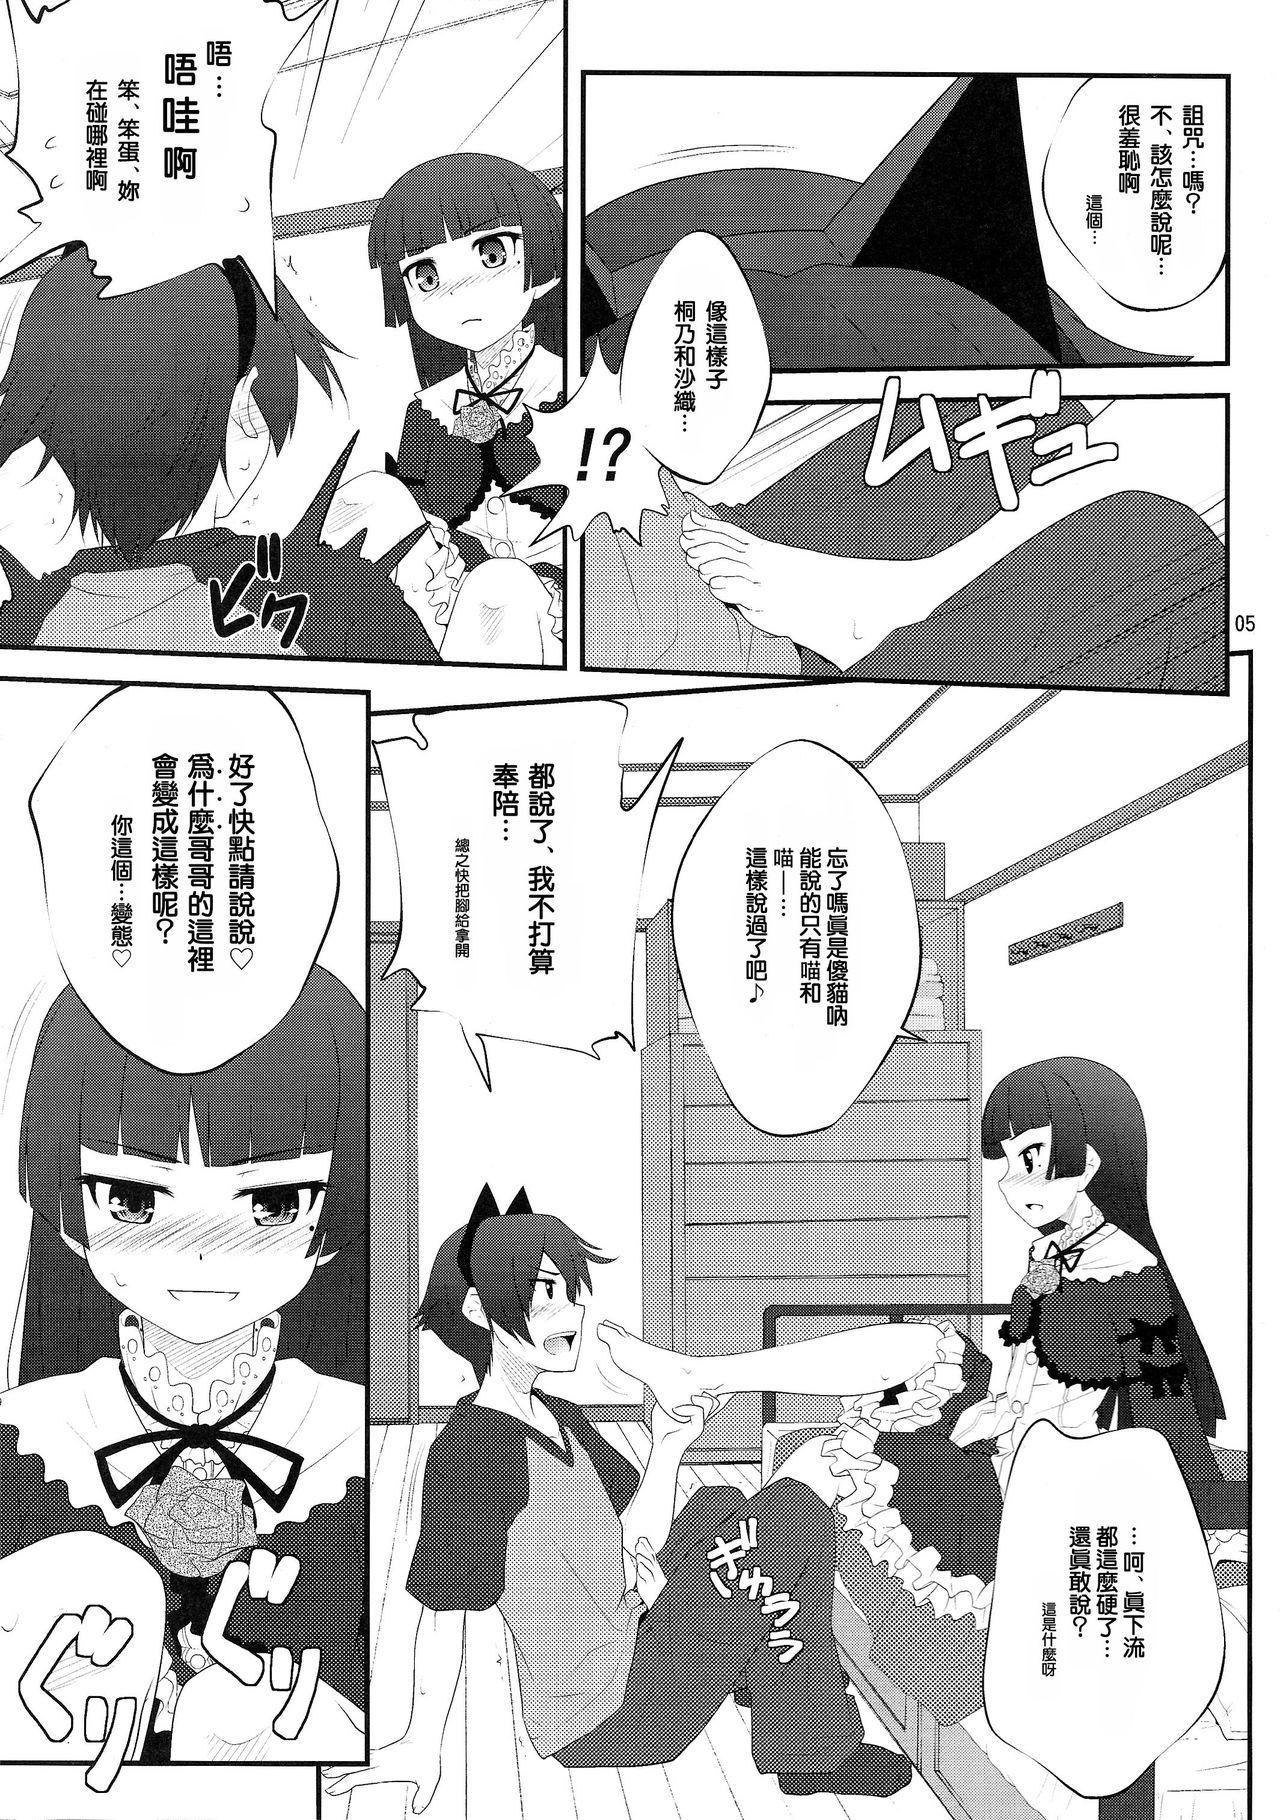 Rough Sex Nii-san, Ashi Monde Choudai After - Ore no imouto ga konna ni kawaii wake ga nai Parties - Page 5